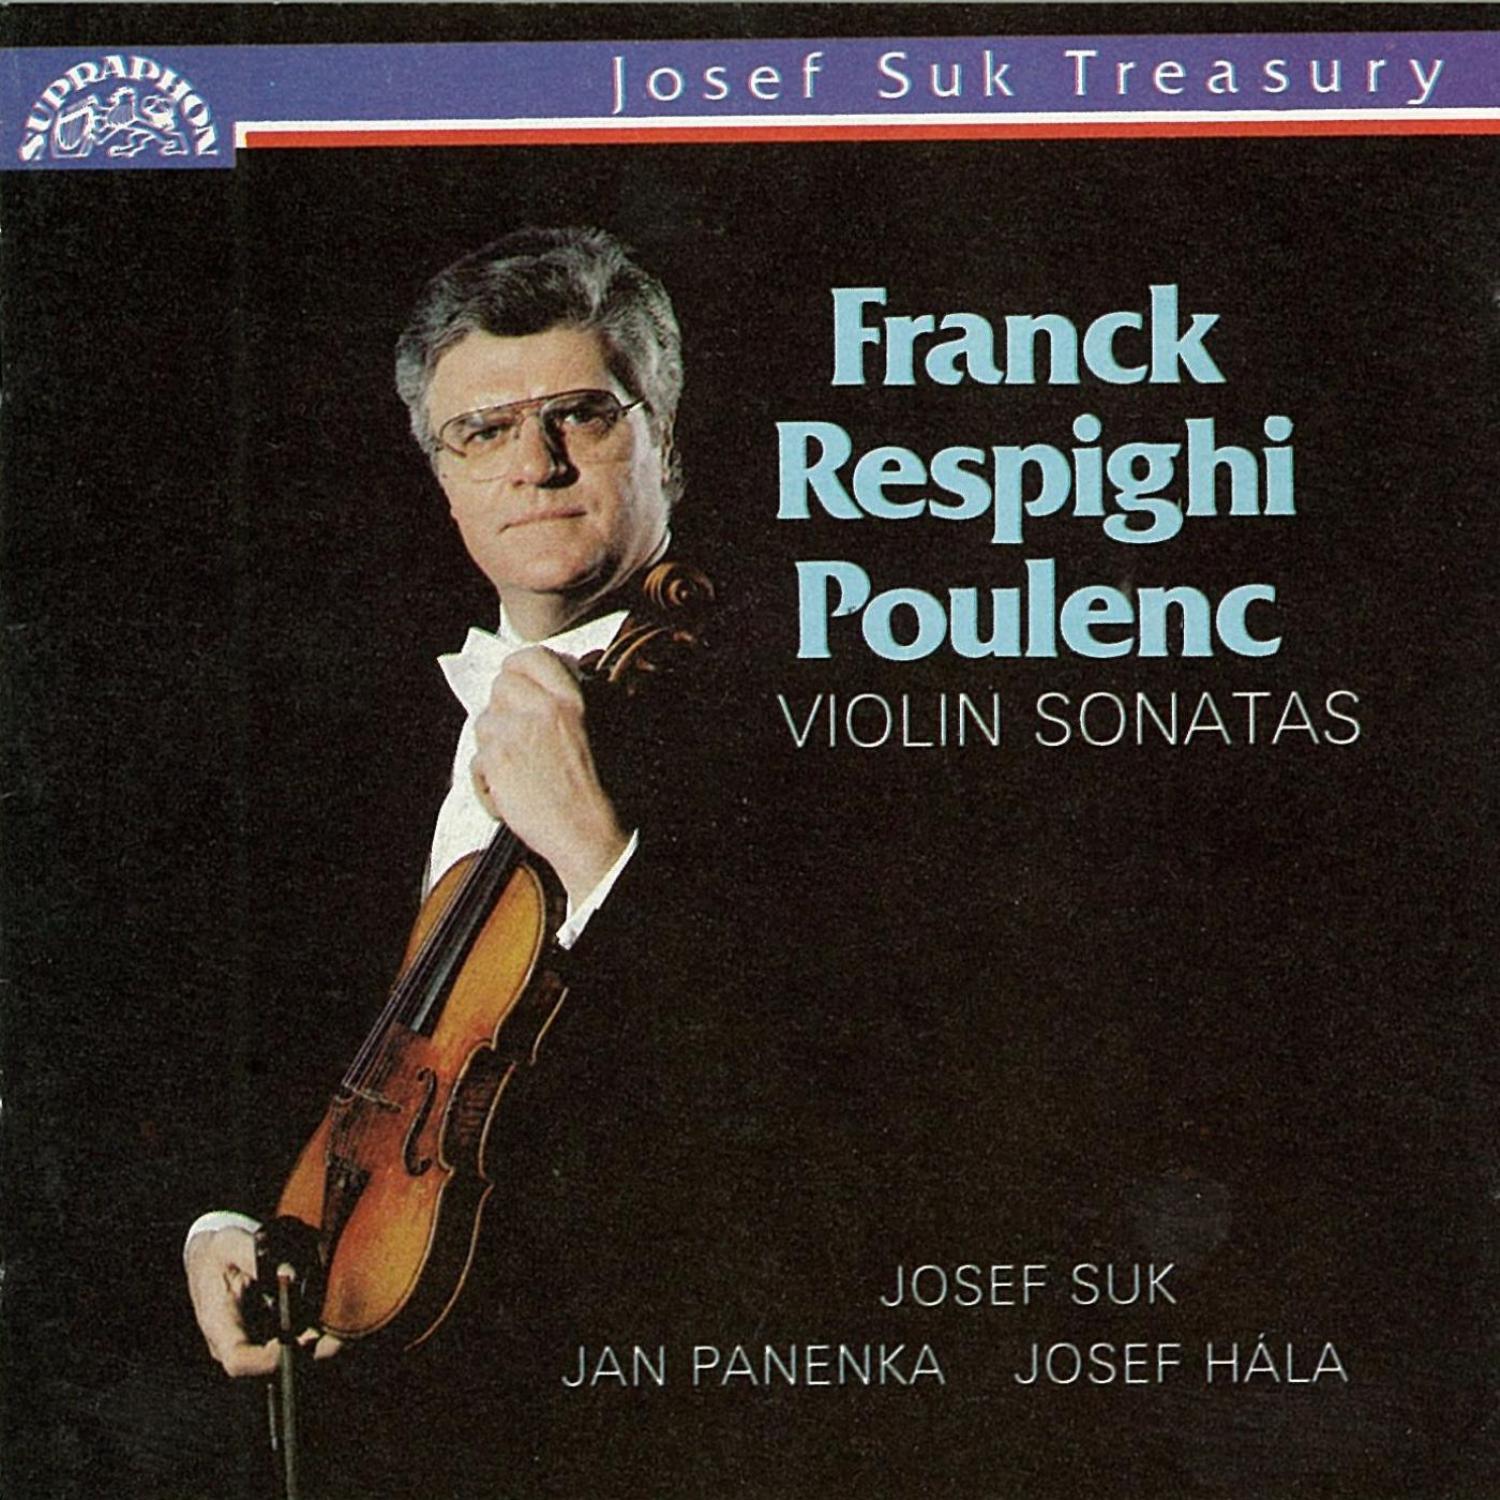 Franck, Respighi, Poulenc: Violin Sonatas